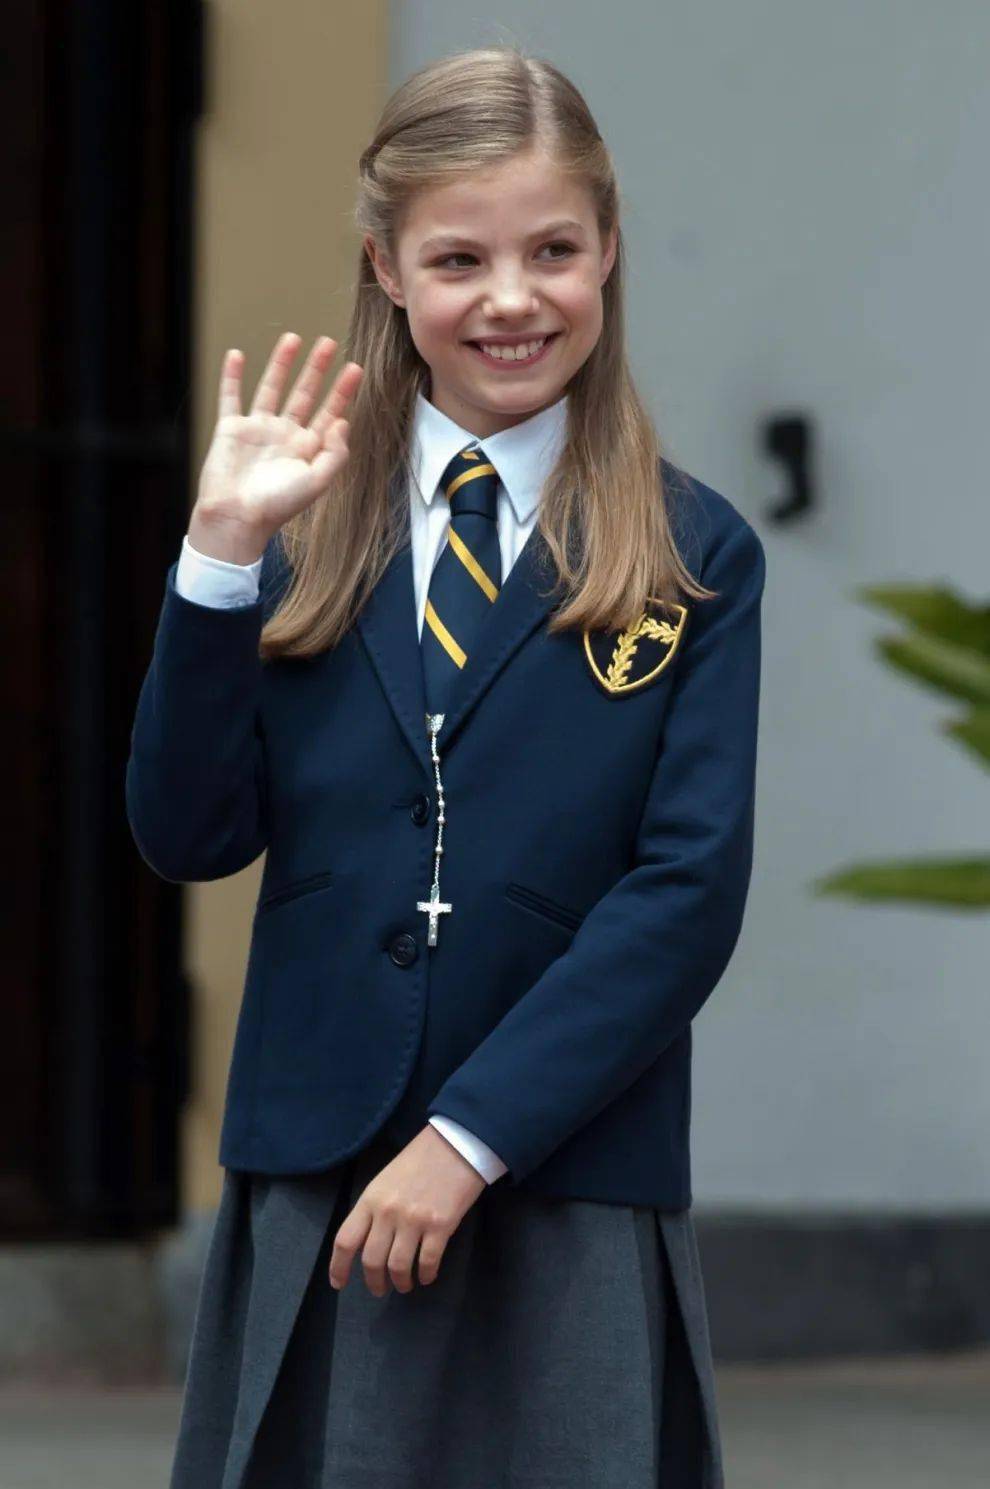 西班牙二公主索菲亚16岁了!